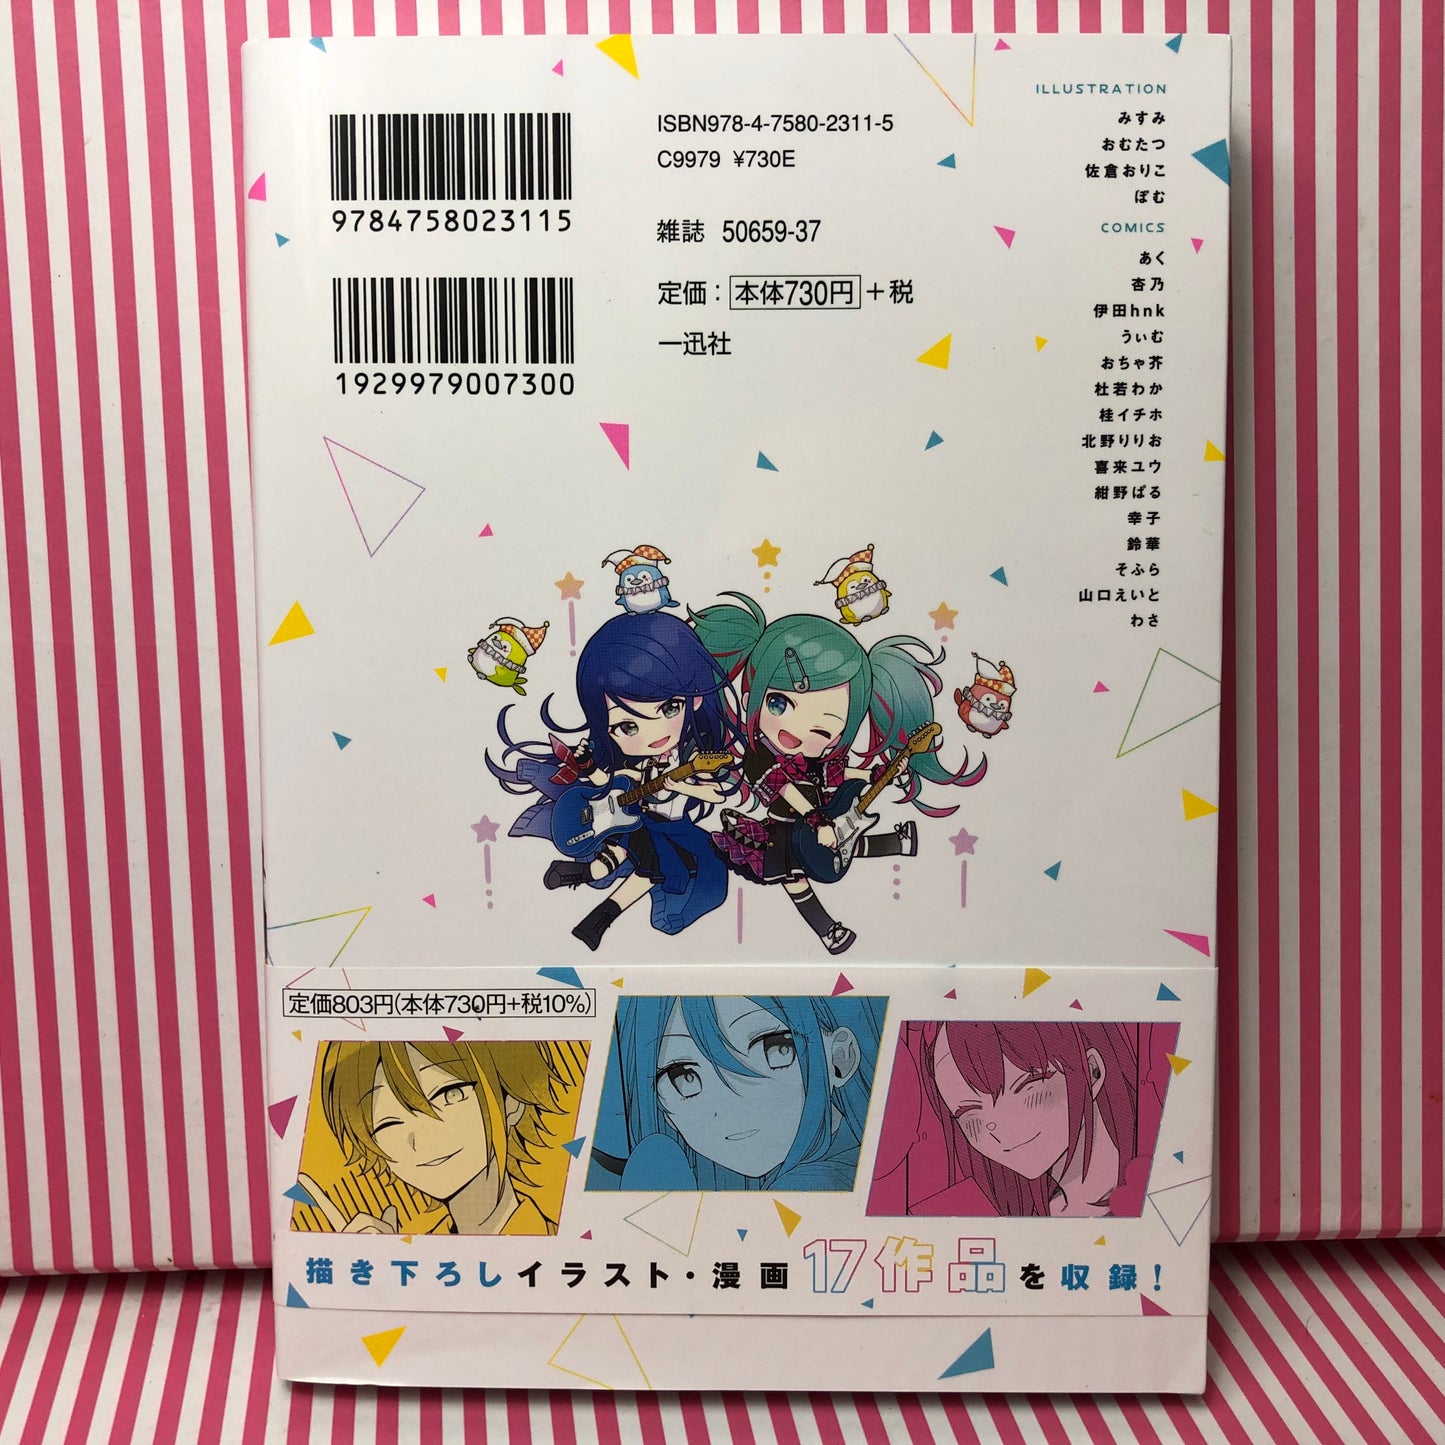 Volume 1 Projet d'anthologie manga Sekai Colorful Stage ! pi. Hatsune Miku Vol.1